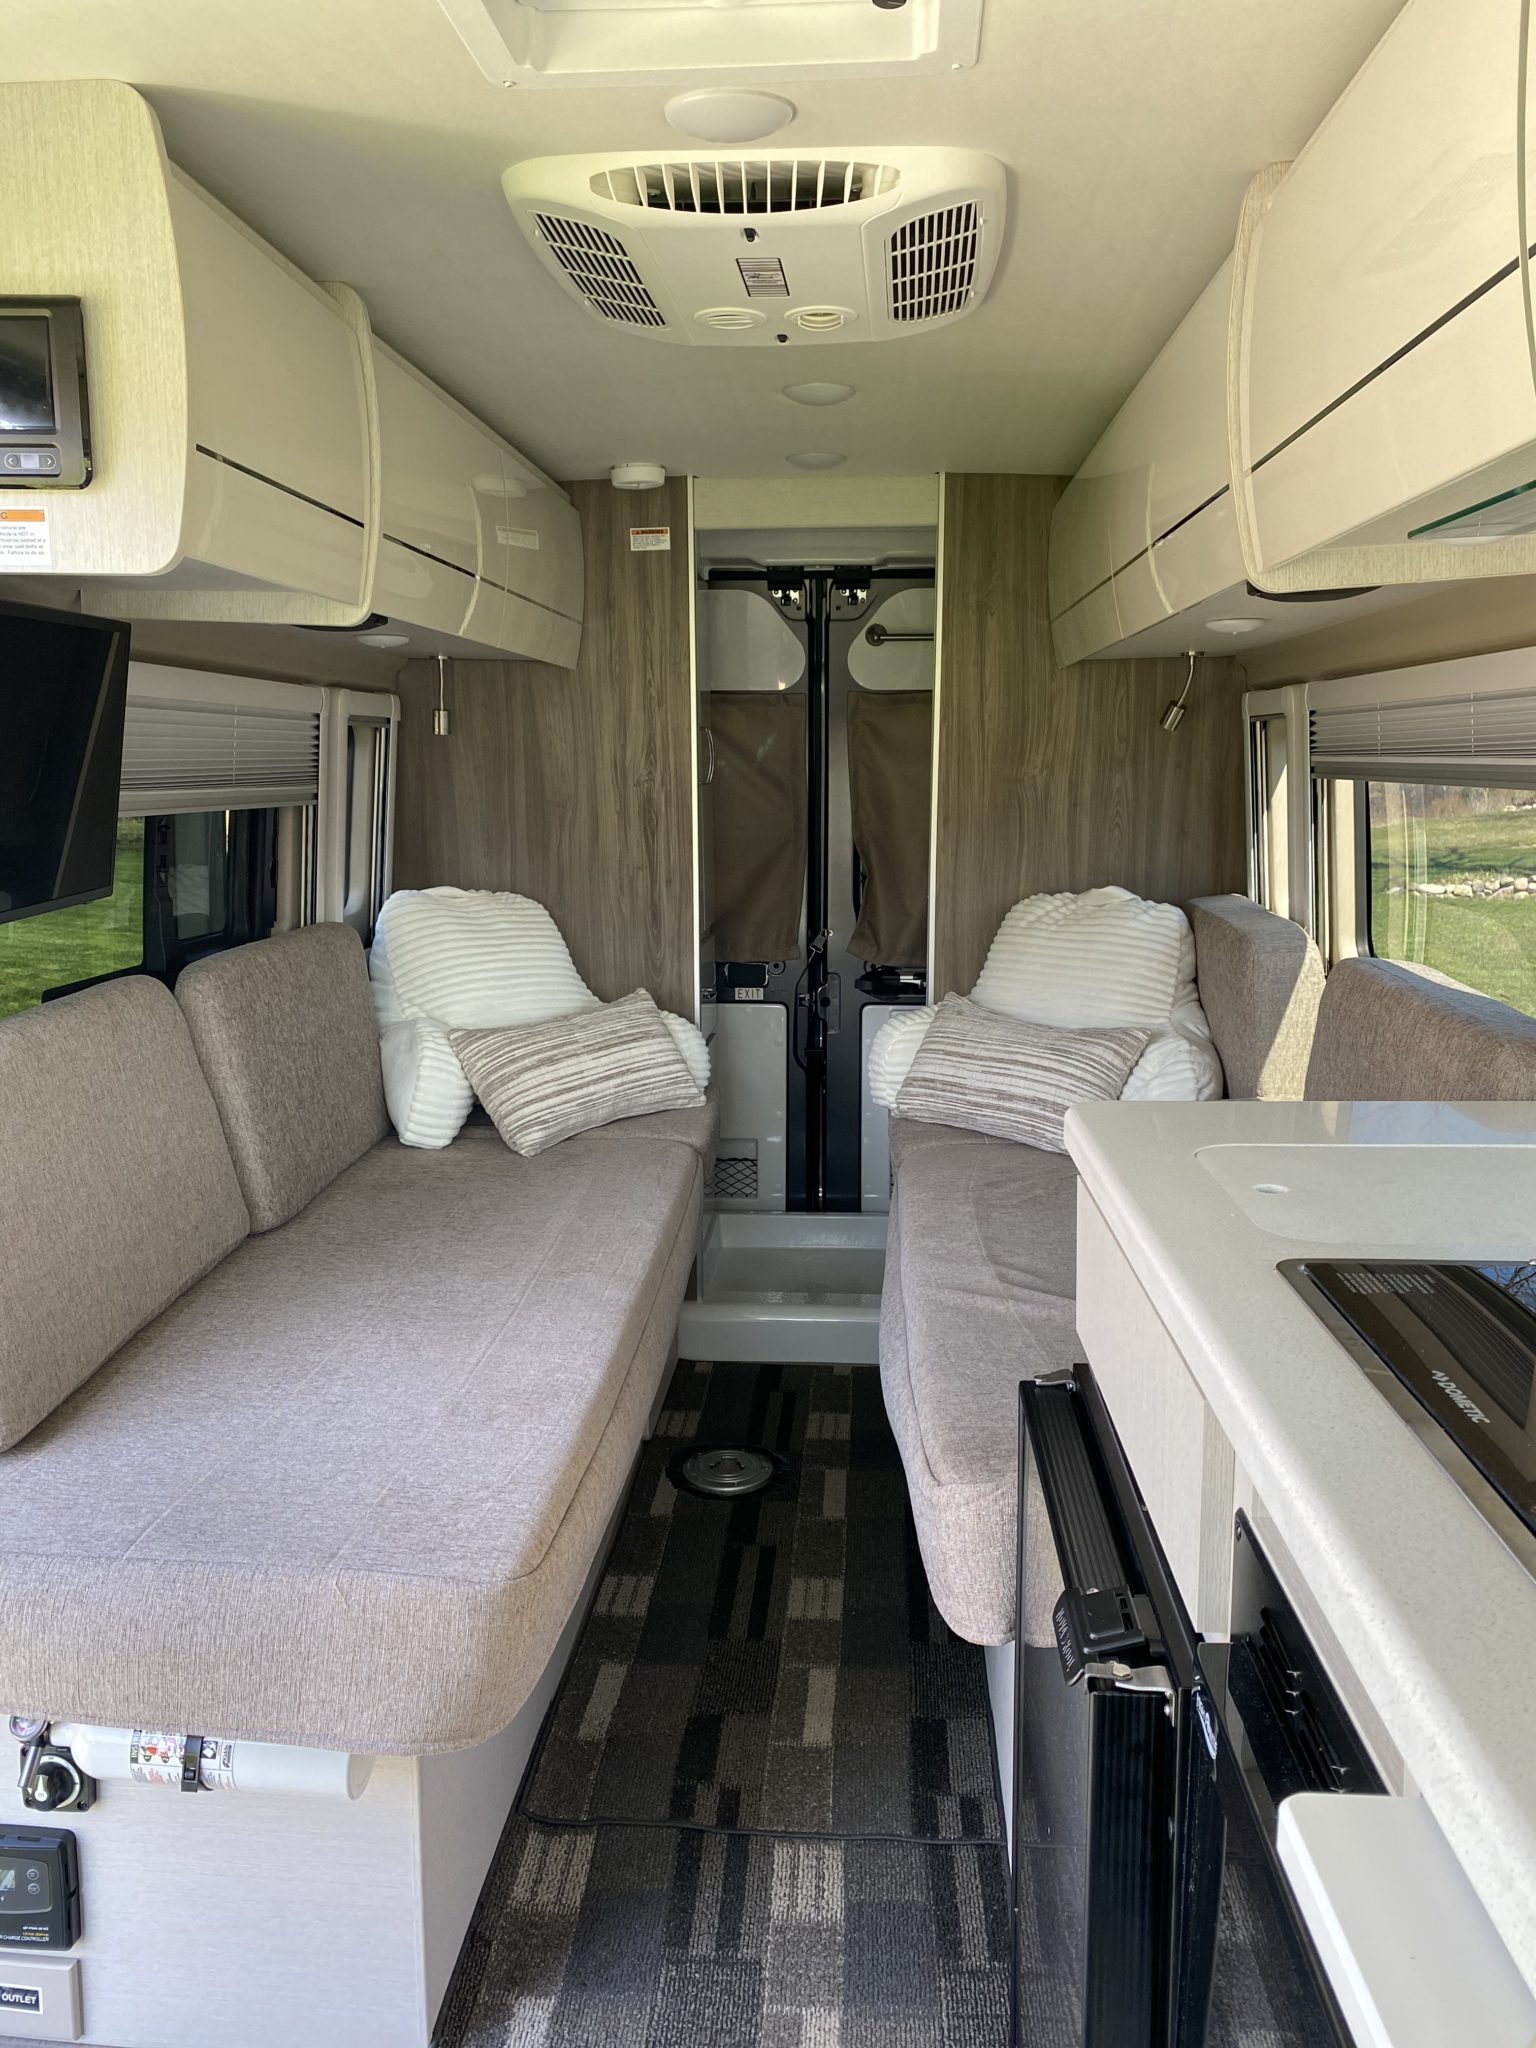 2021 Dodge Ram Camper Van For Sale in Traverse City, Michigan - Van Viewer